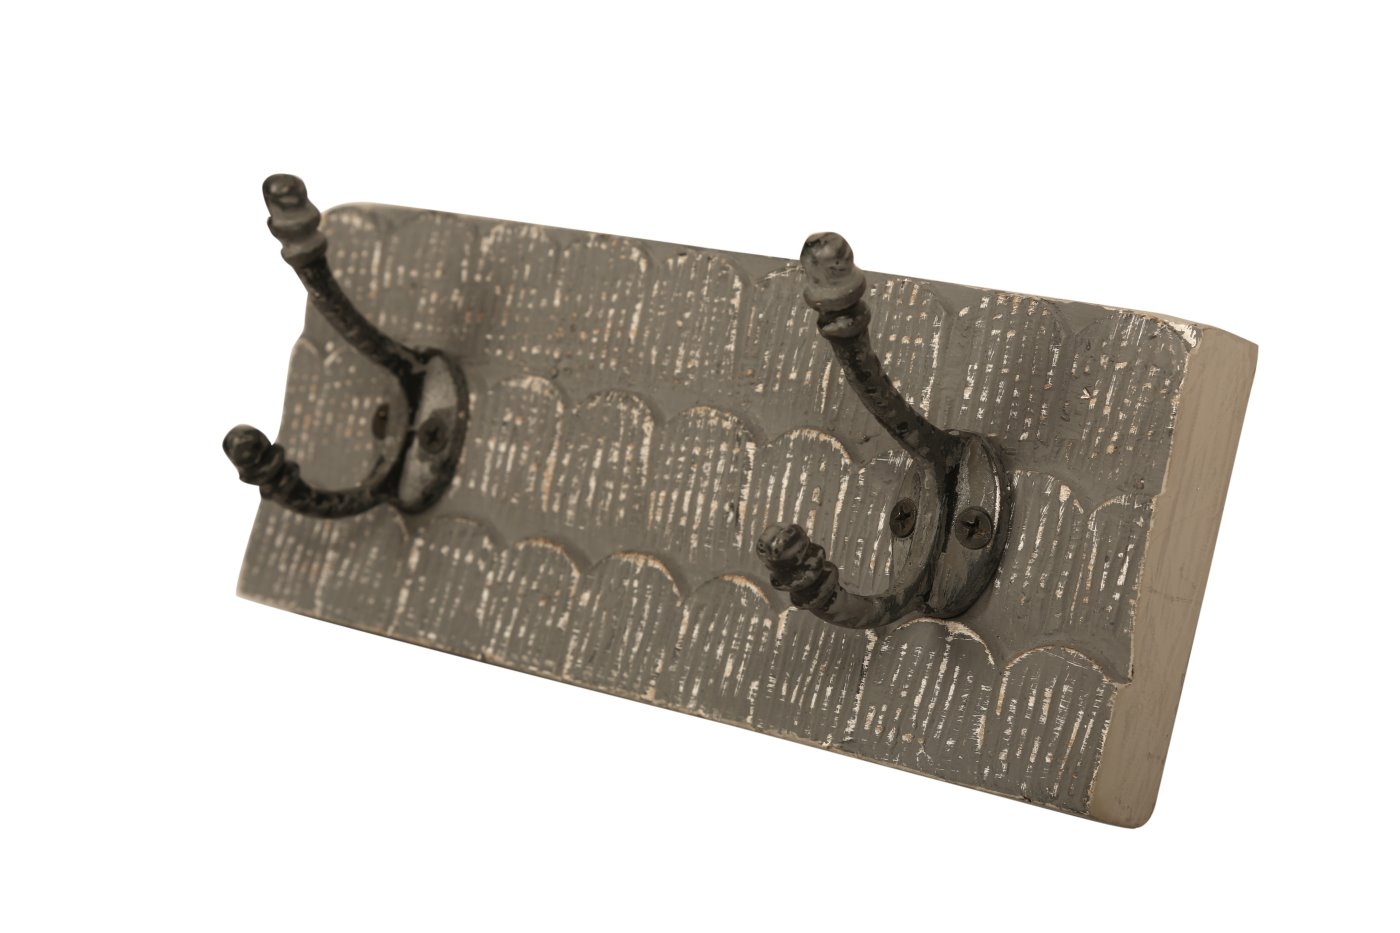 bhp Wandgarderobe aus Holz braungrau gemustert mit 2 Metallhaken-Front geschnitzt unter Haken und Hakenleisten > Garderoben > bhp